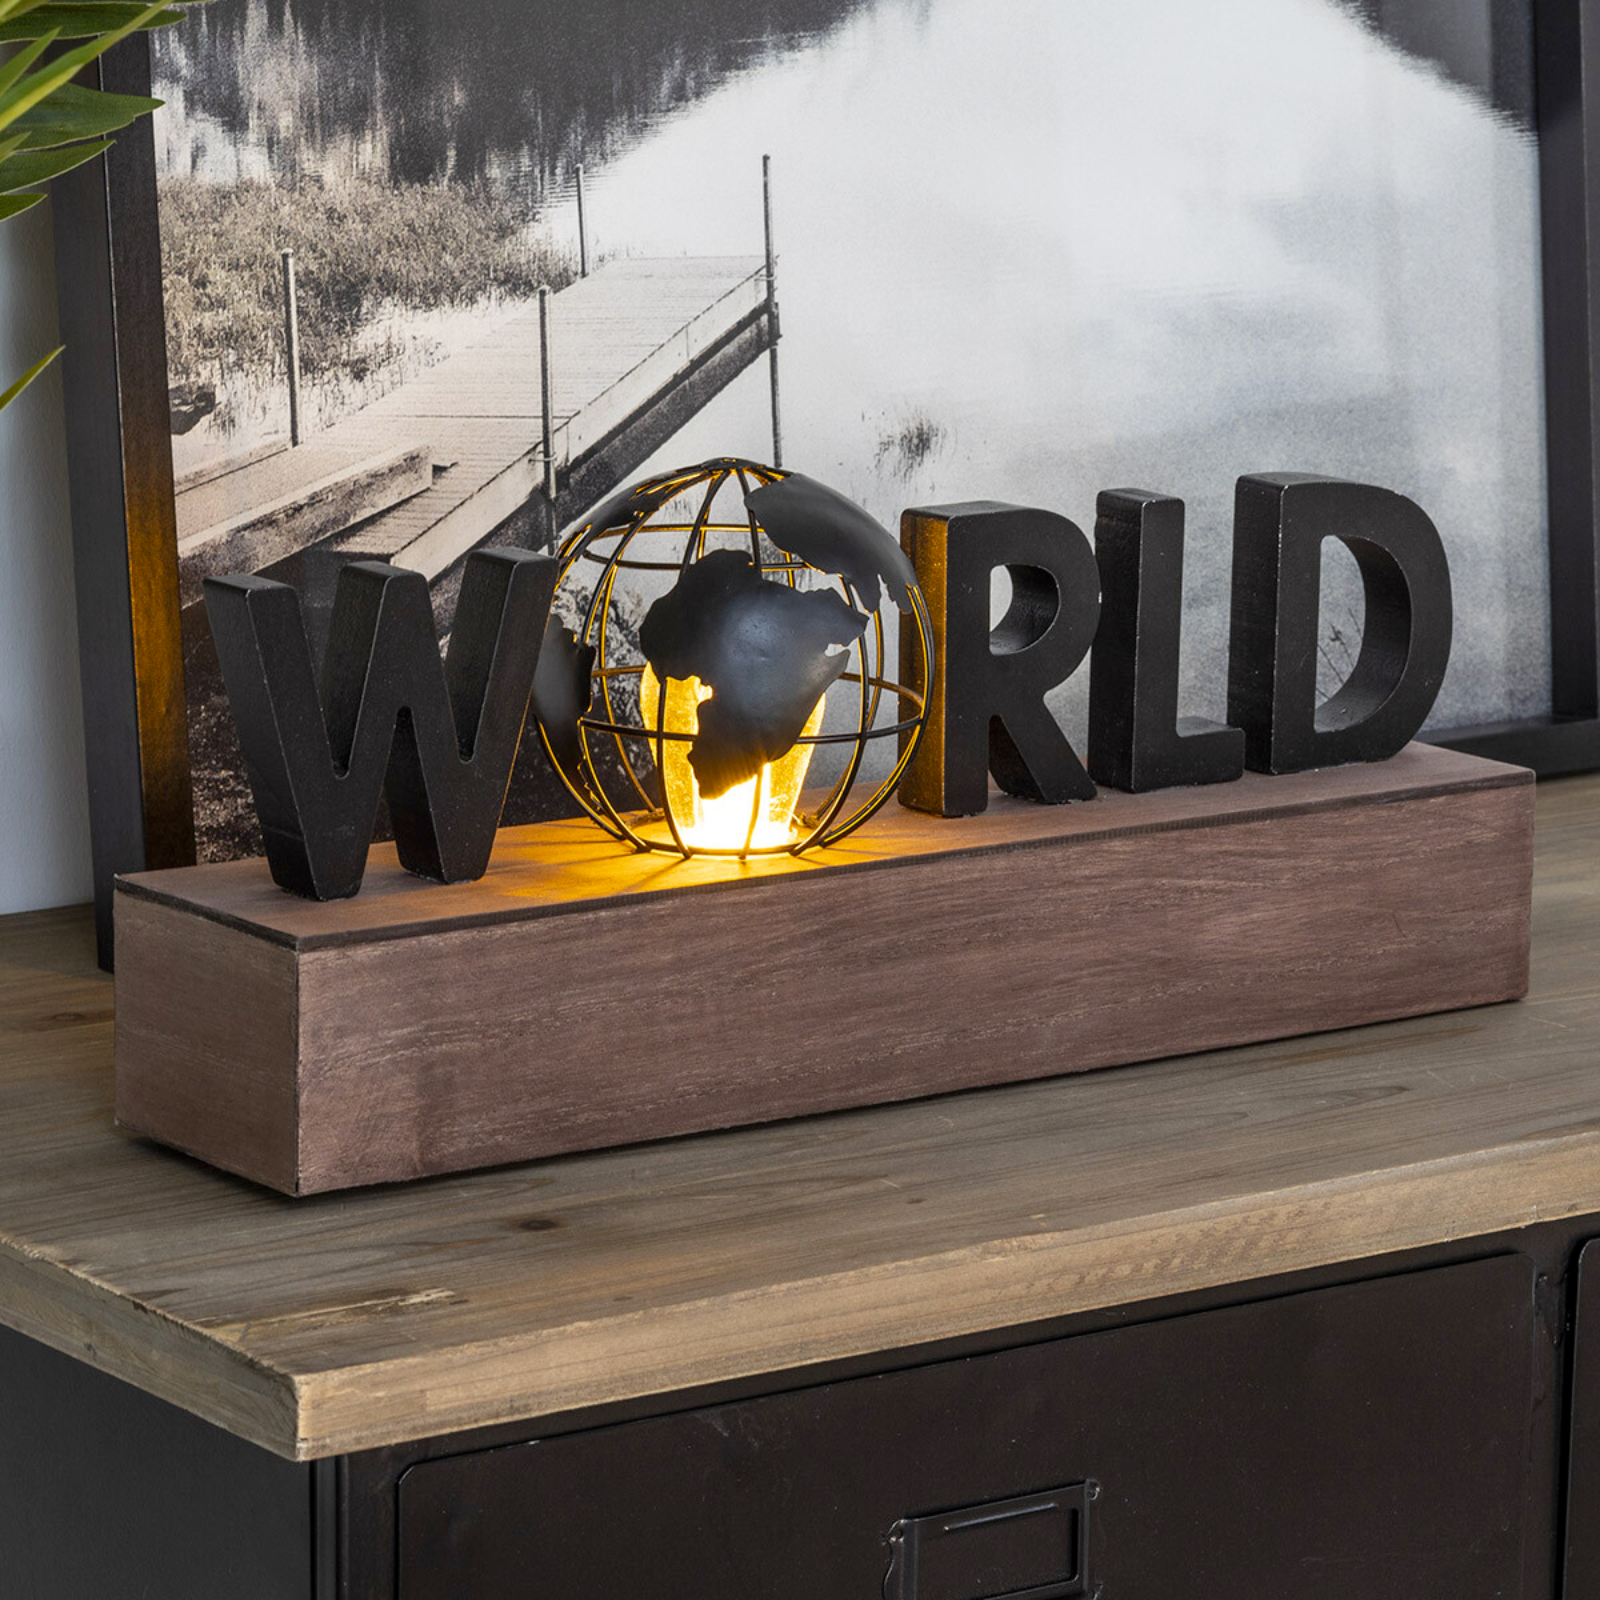 Lampada decorativa "World" led a batterie con struttura in legno e metallo H 38 cm